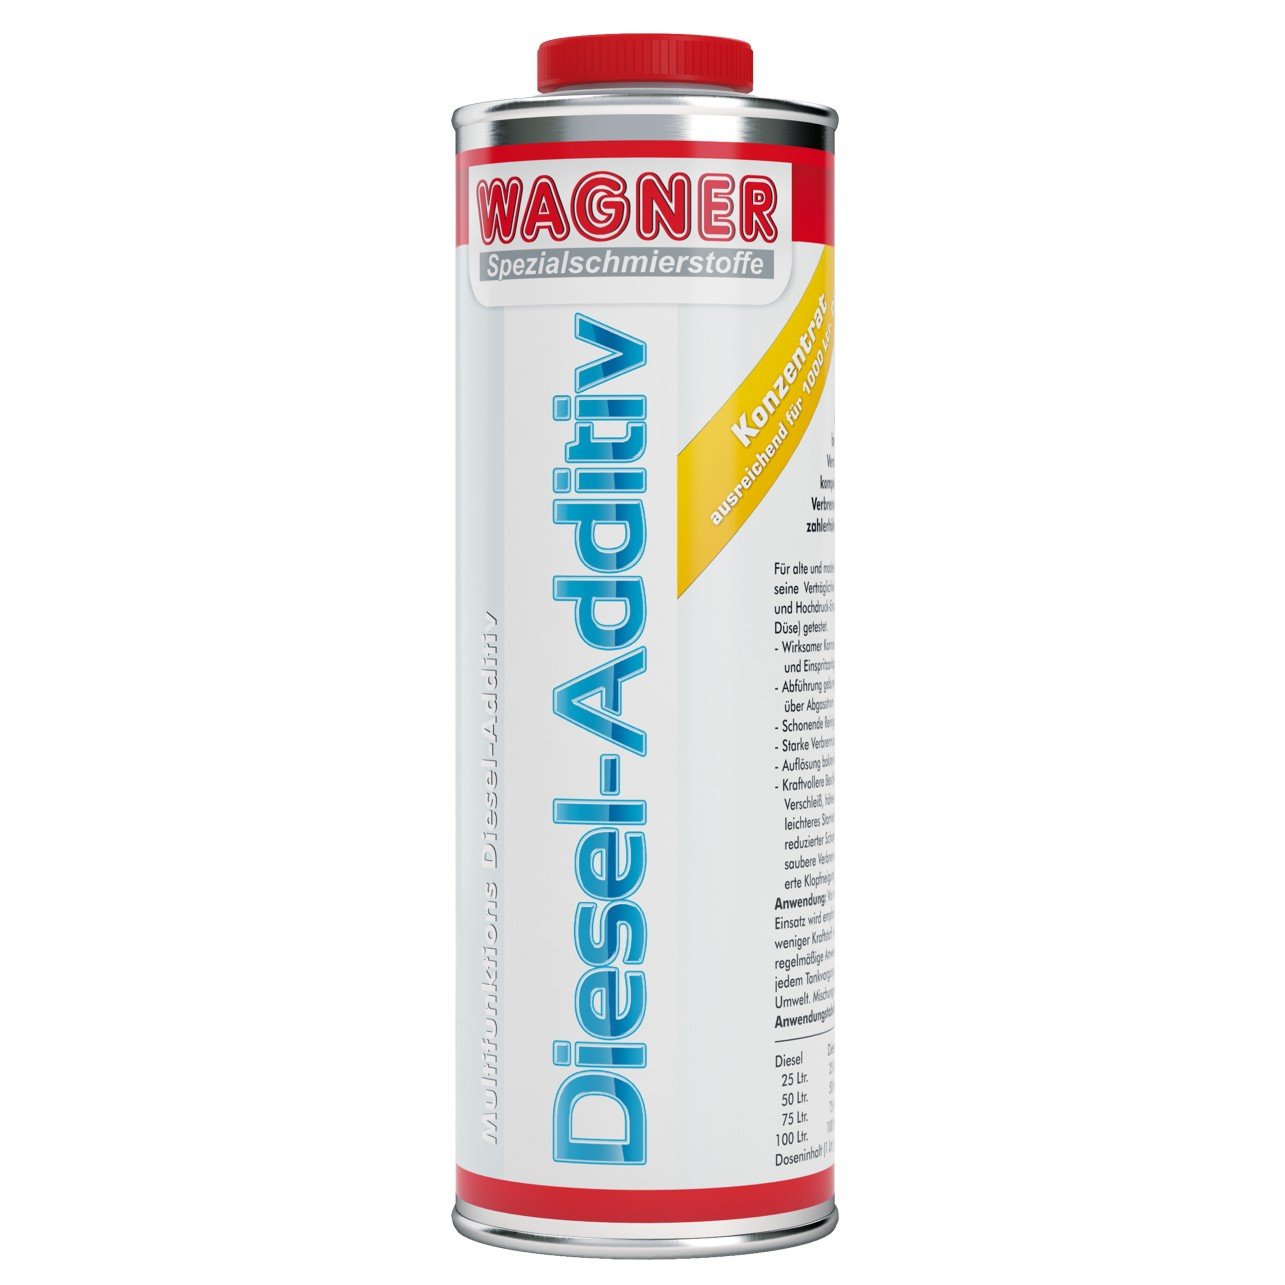 WAGNER Diesel-Additiv - 041001 - 1 Liter von WAGNER Spezialschmierstoffe GmbH & Co. KG